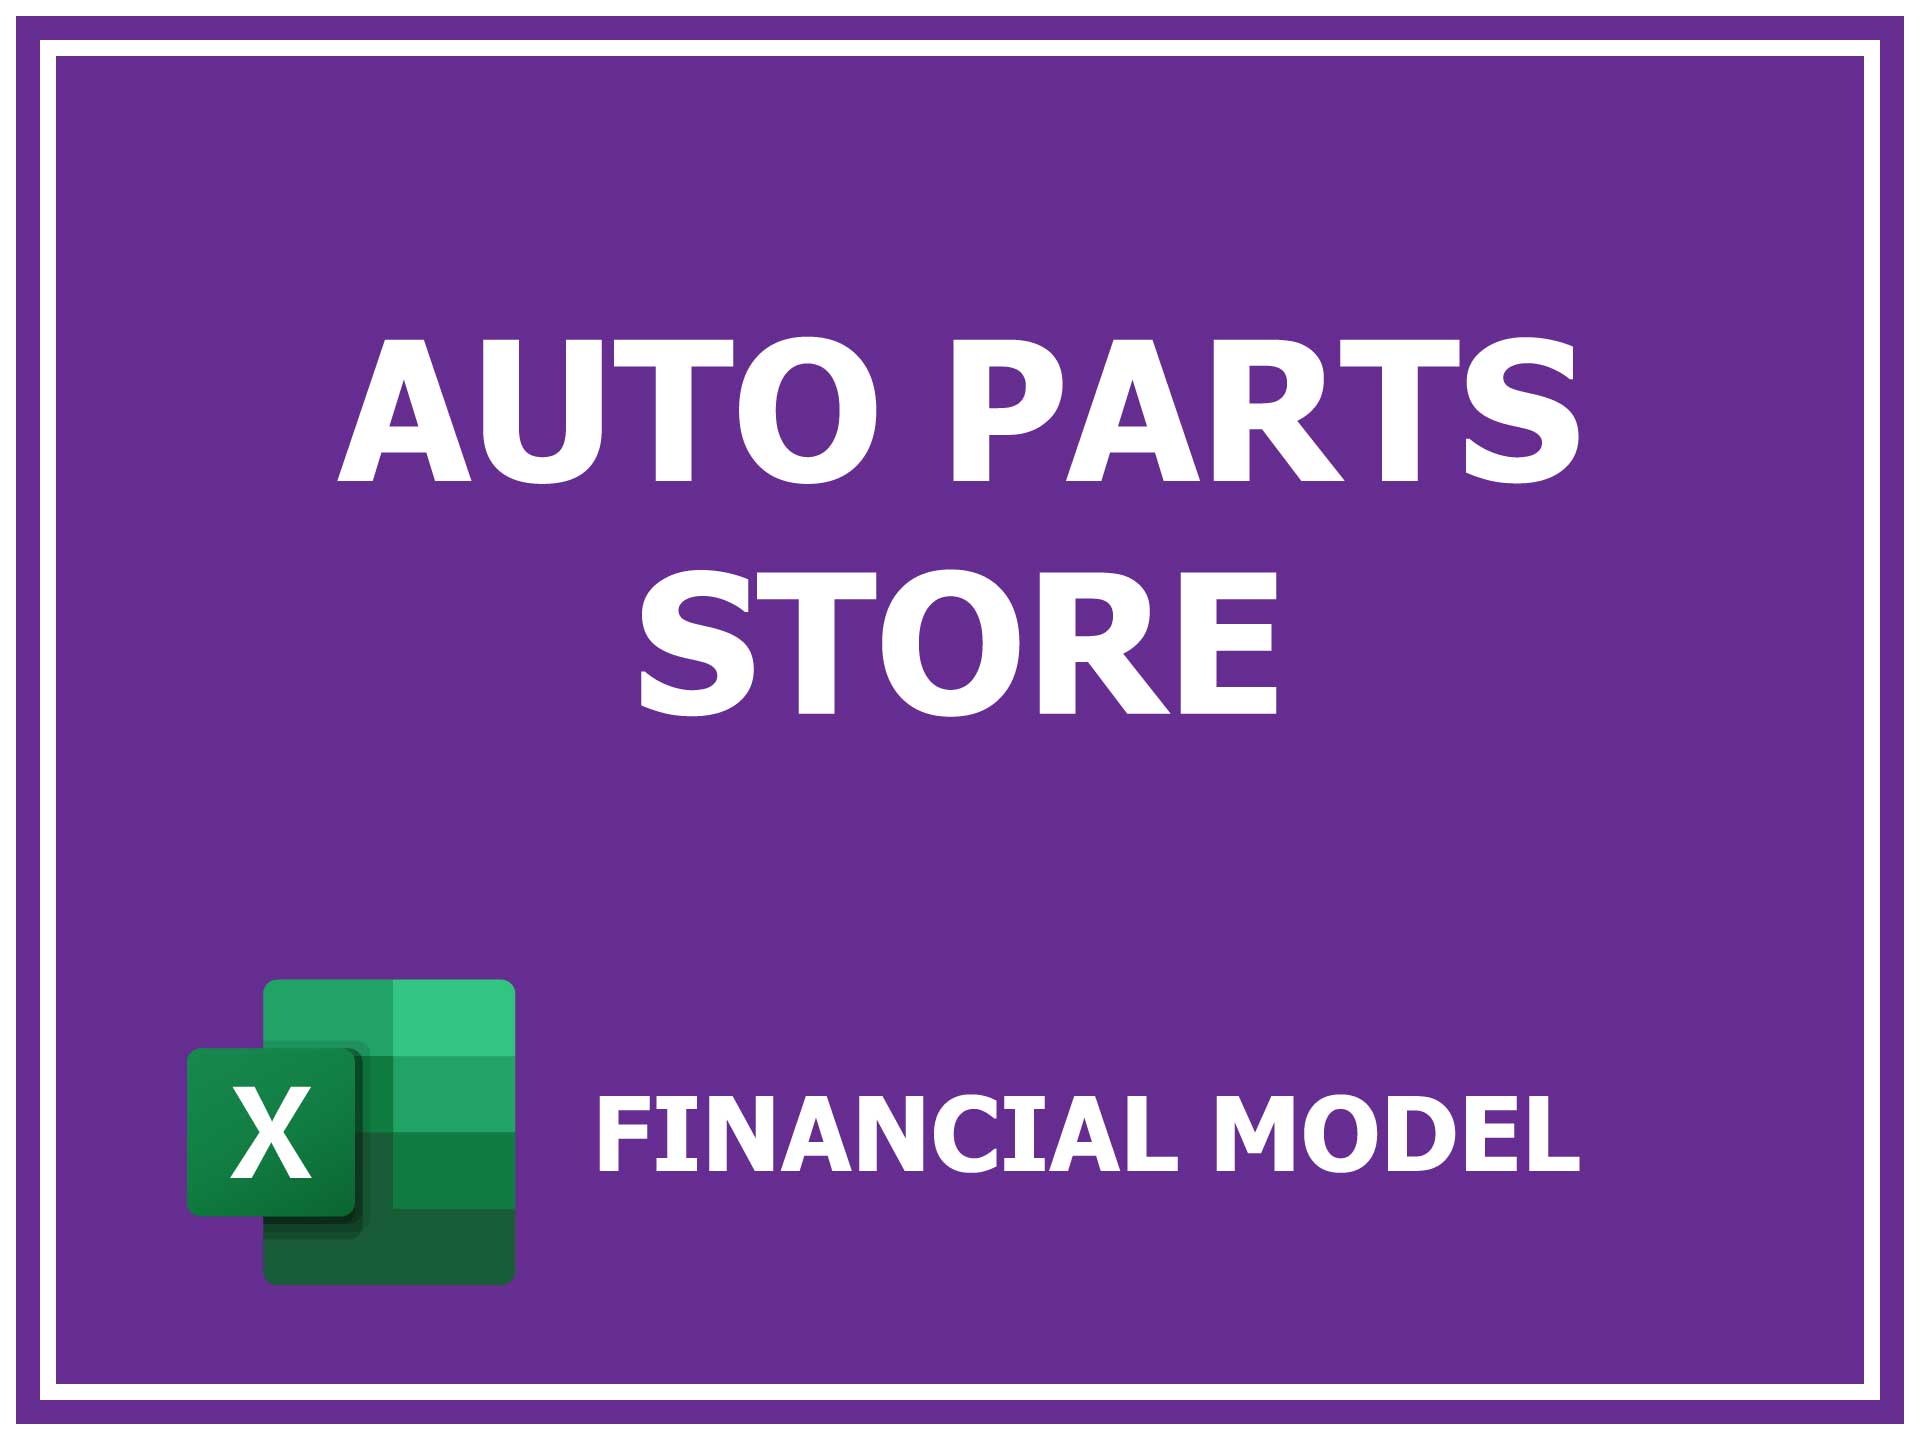 online auto parts business plan